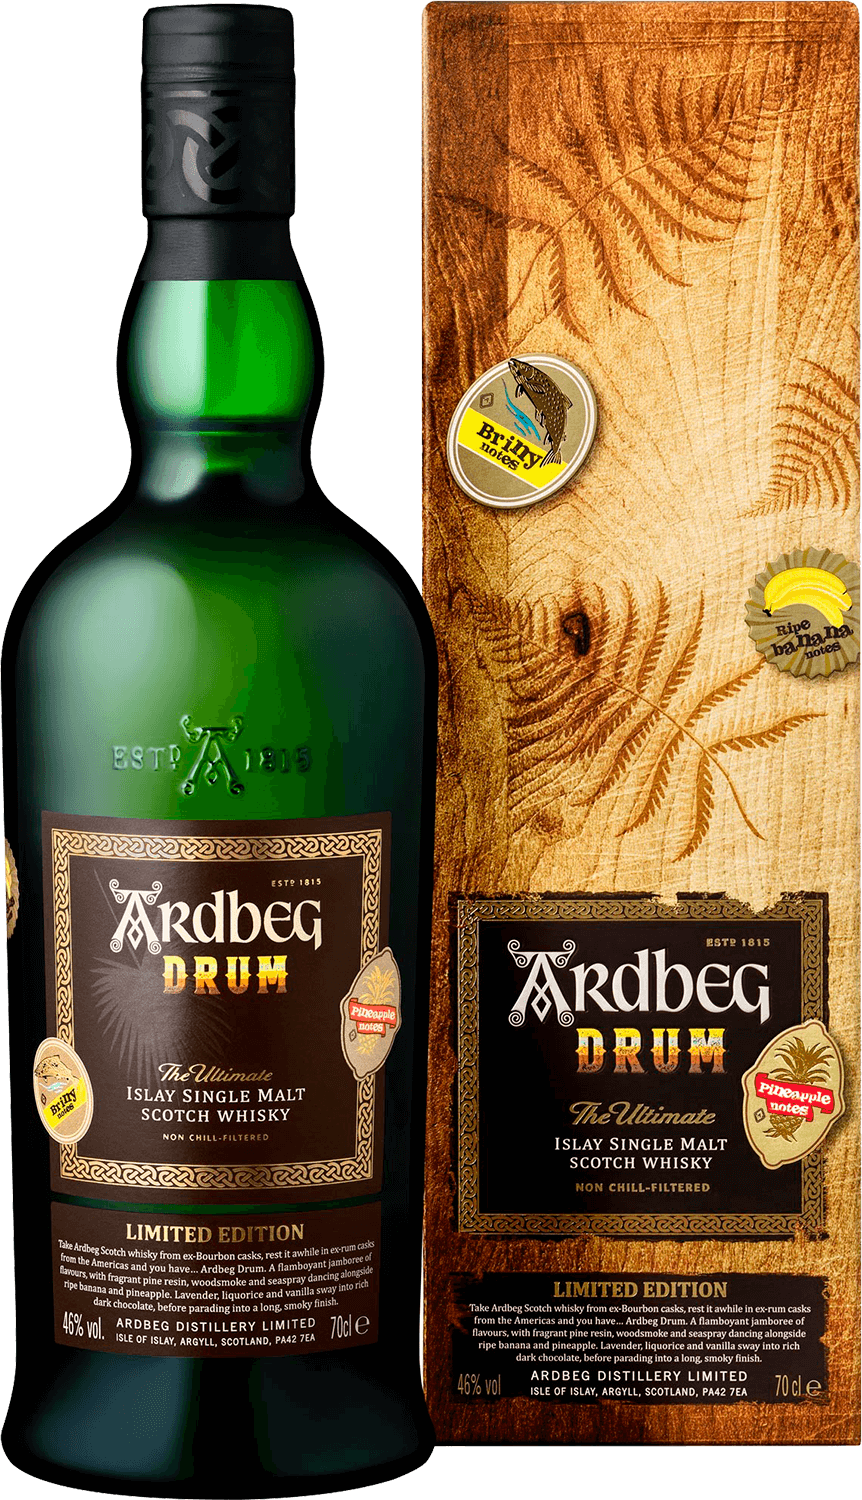 Ardbeg Drum Islay Single Malt Scotch Whisky (gift box) bruichladdich islay barley single malt scotch whisky gift box